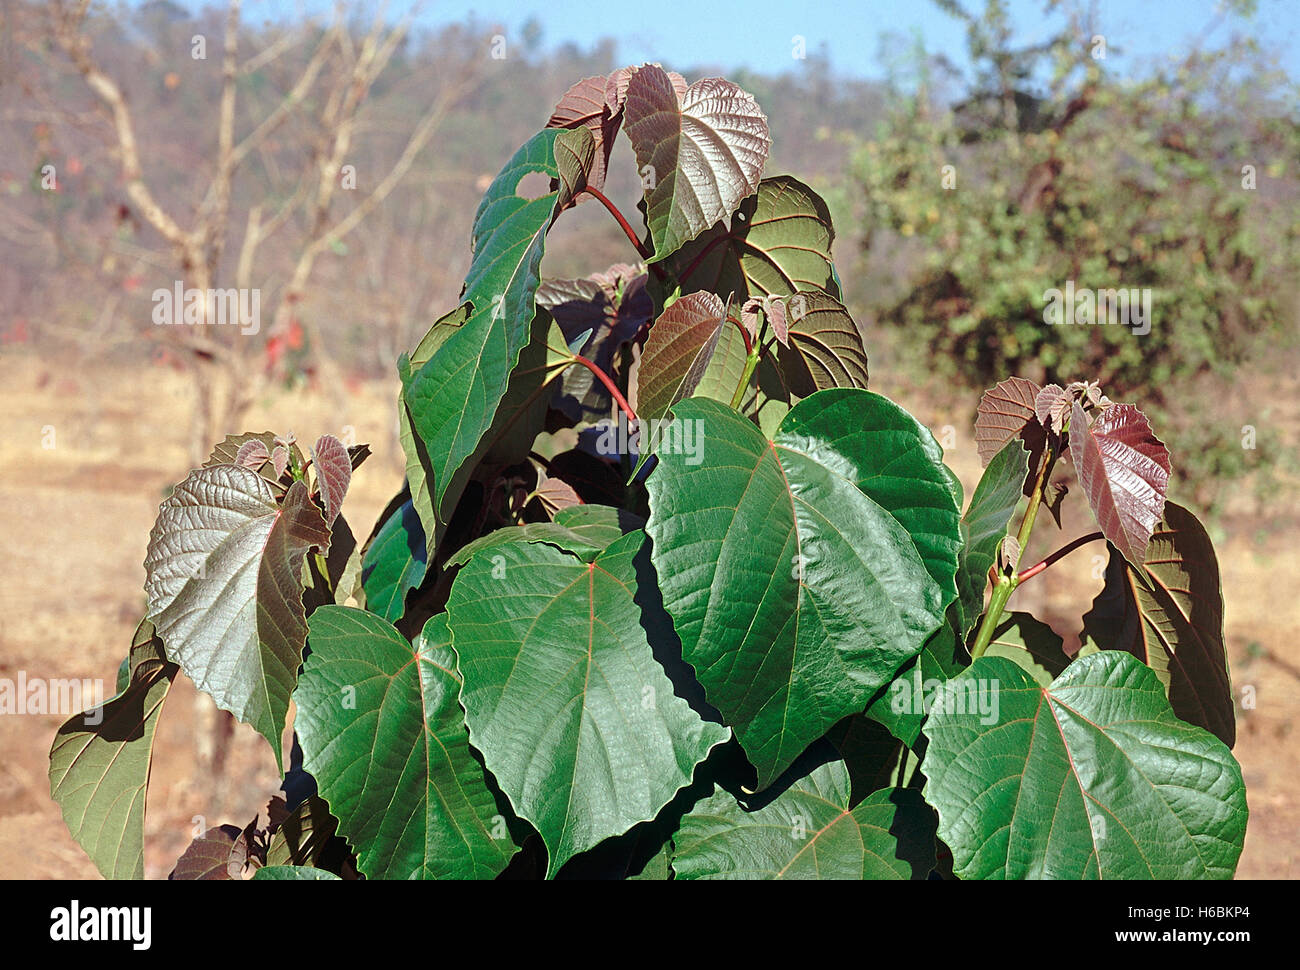 Hojas. trewia nudiflora. Familia: euphorbiaceae. Un árbol caducifolio de tamaño mediano que se encuentra principalmente en las zonas húmedas. Foto de stock